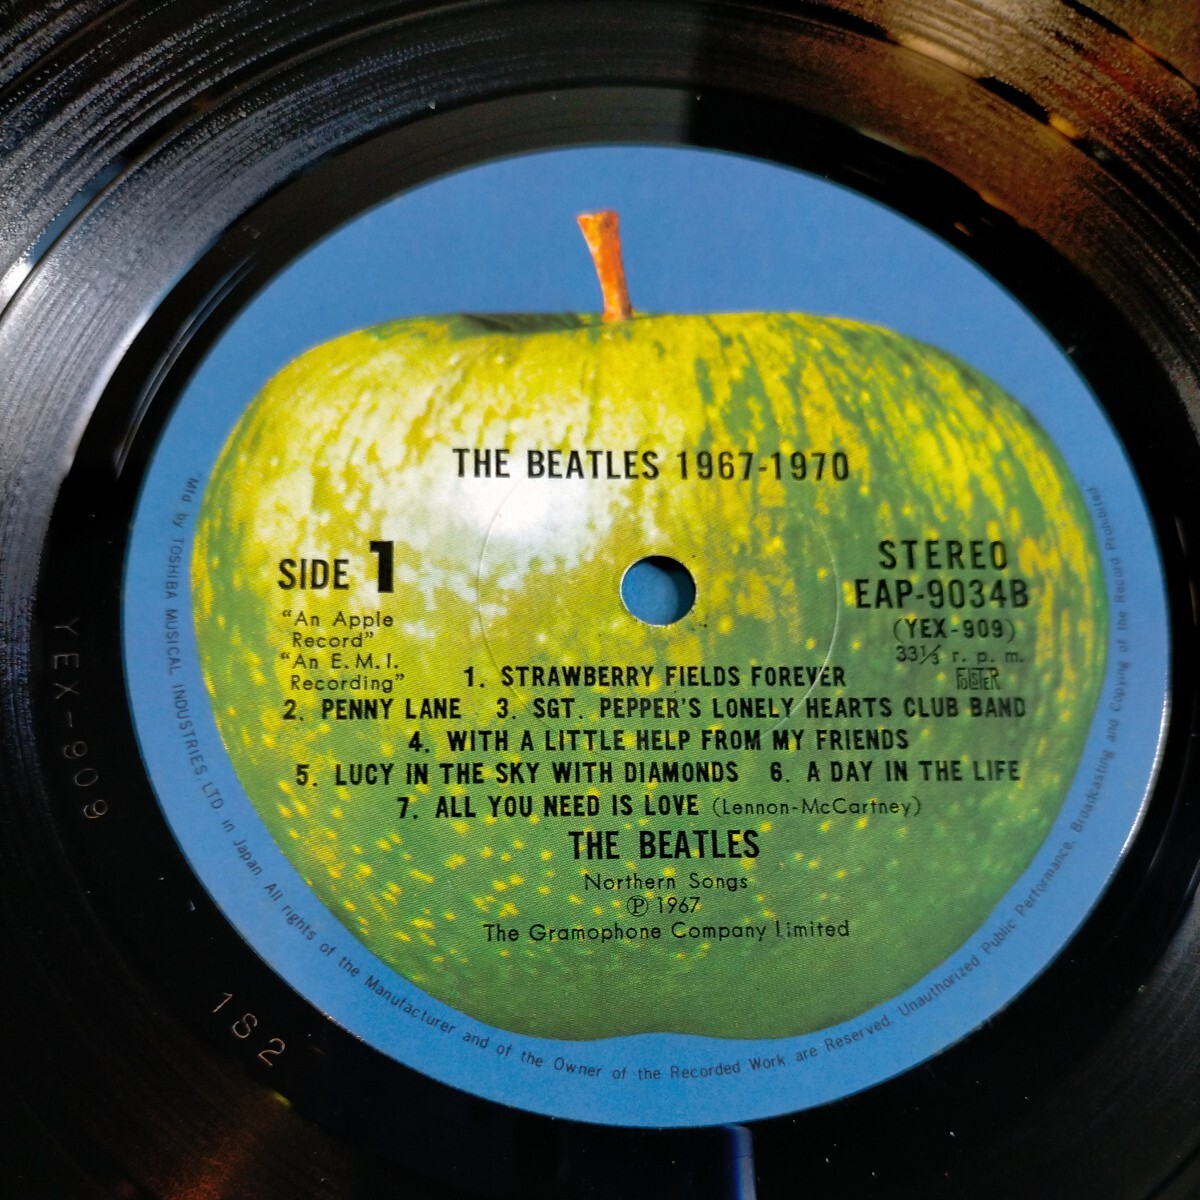 N4860 LP レコード 洋楽 ポップス カントリー LP盤 LPレコード ビートルズ レトロ BEATLES 1967-1970 帯付 2枚組 歌詞カード 送料710円_画像6